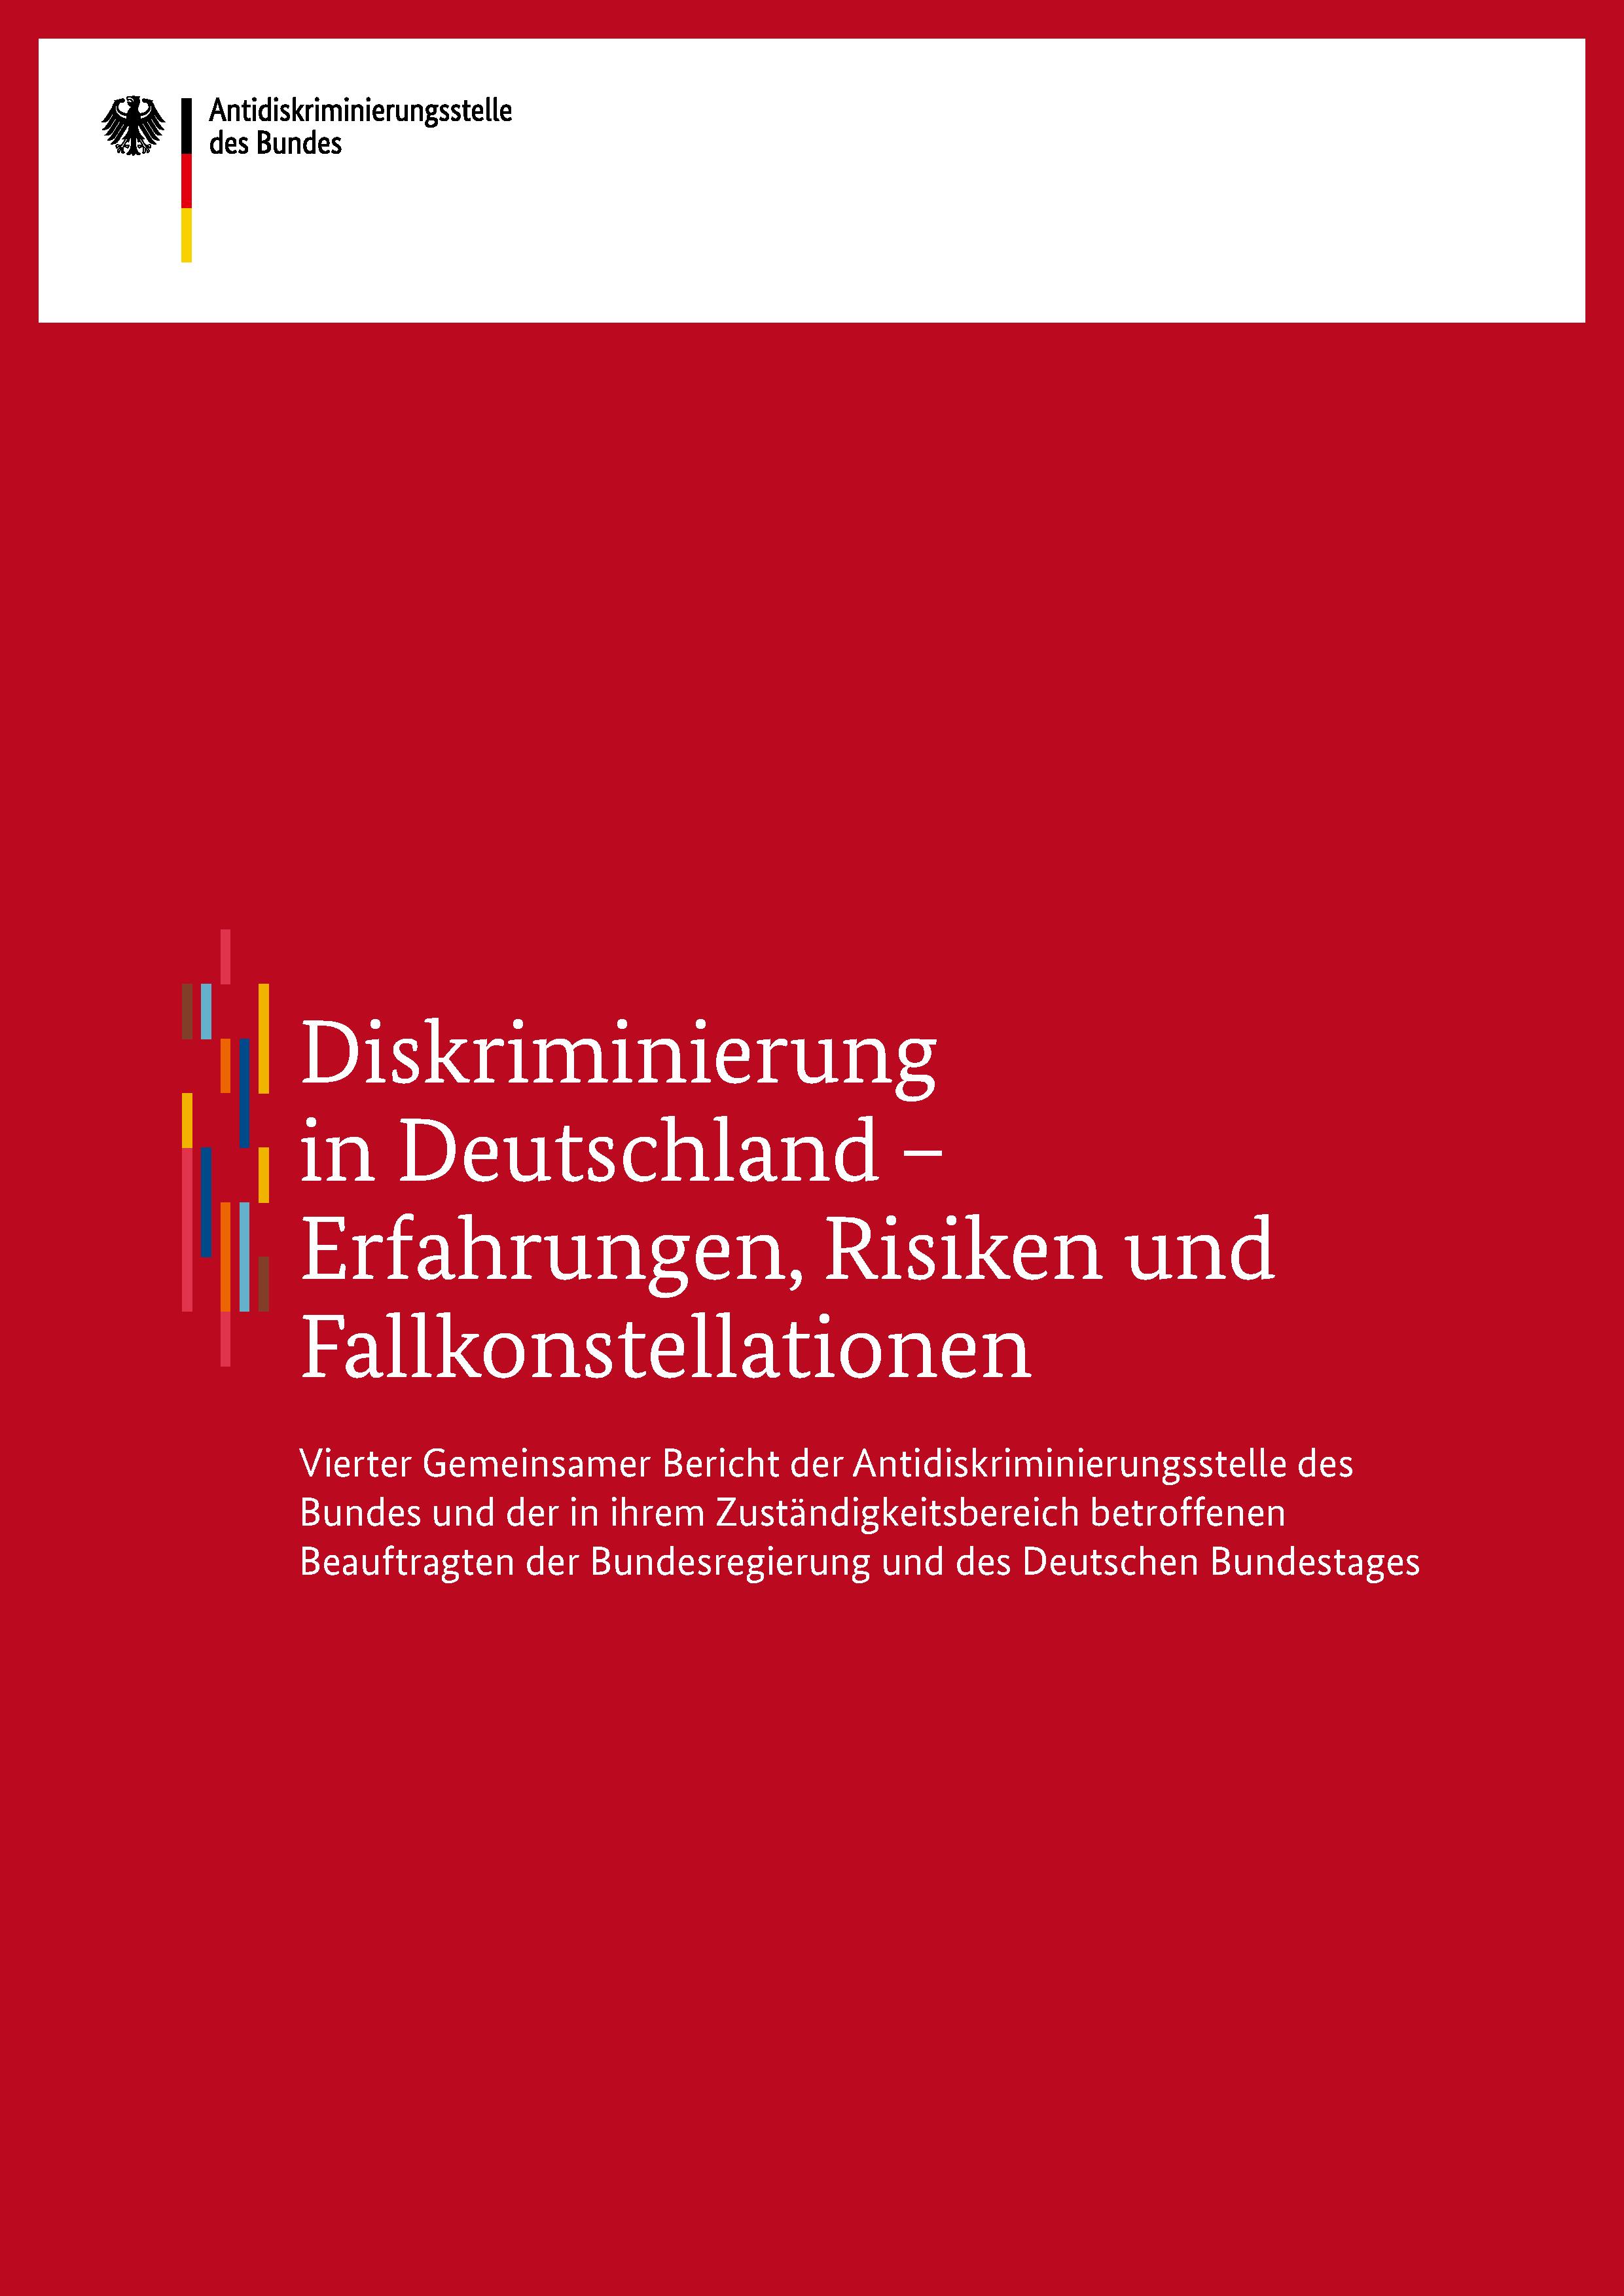 Cover des Vierten Gemeinsamen Berichts: Diskriminierung in Deutschland - Erfahrungen, Risiken und Fallkonstellationen (Quelle: Antidiskriminierungsstelle des Bundes)